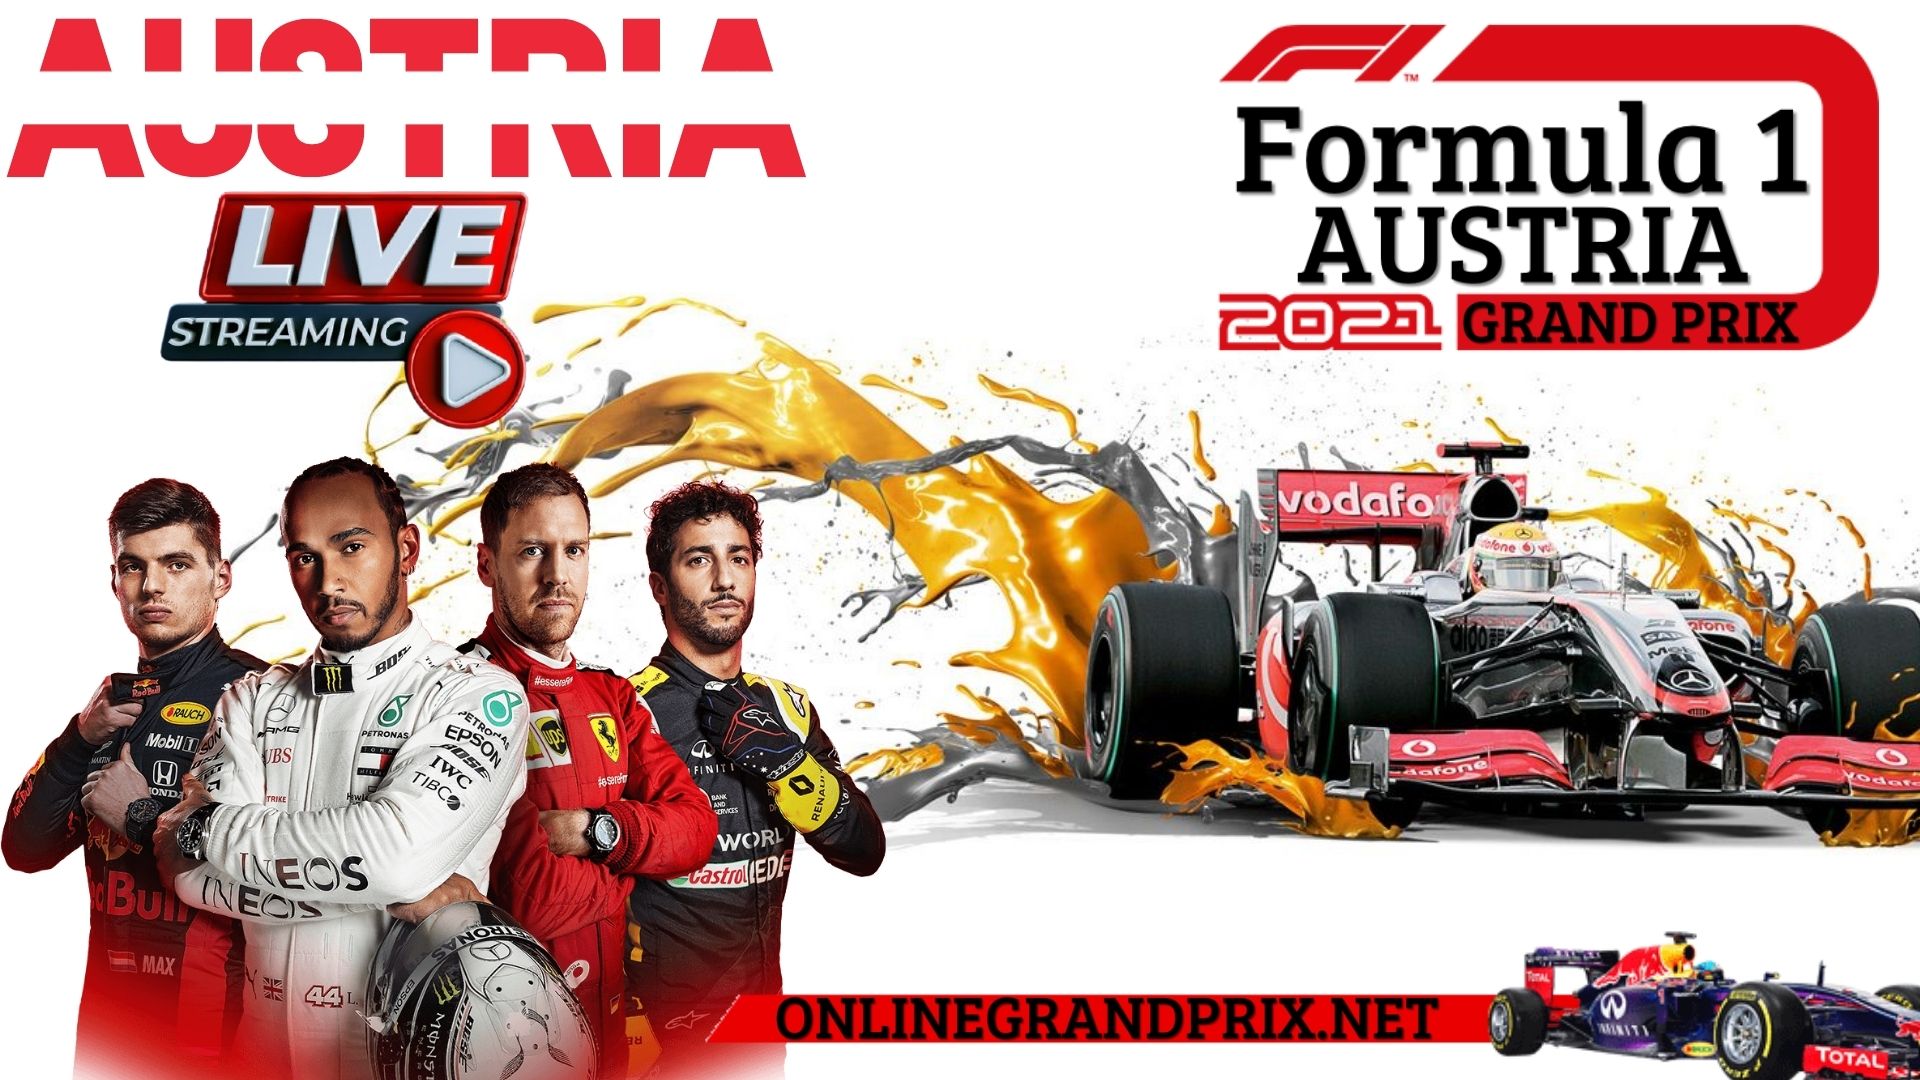 formula-1-austria-gp-2015-live